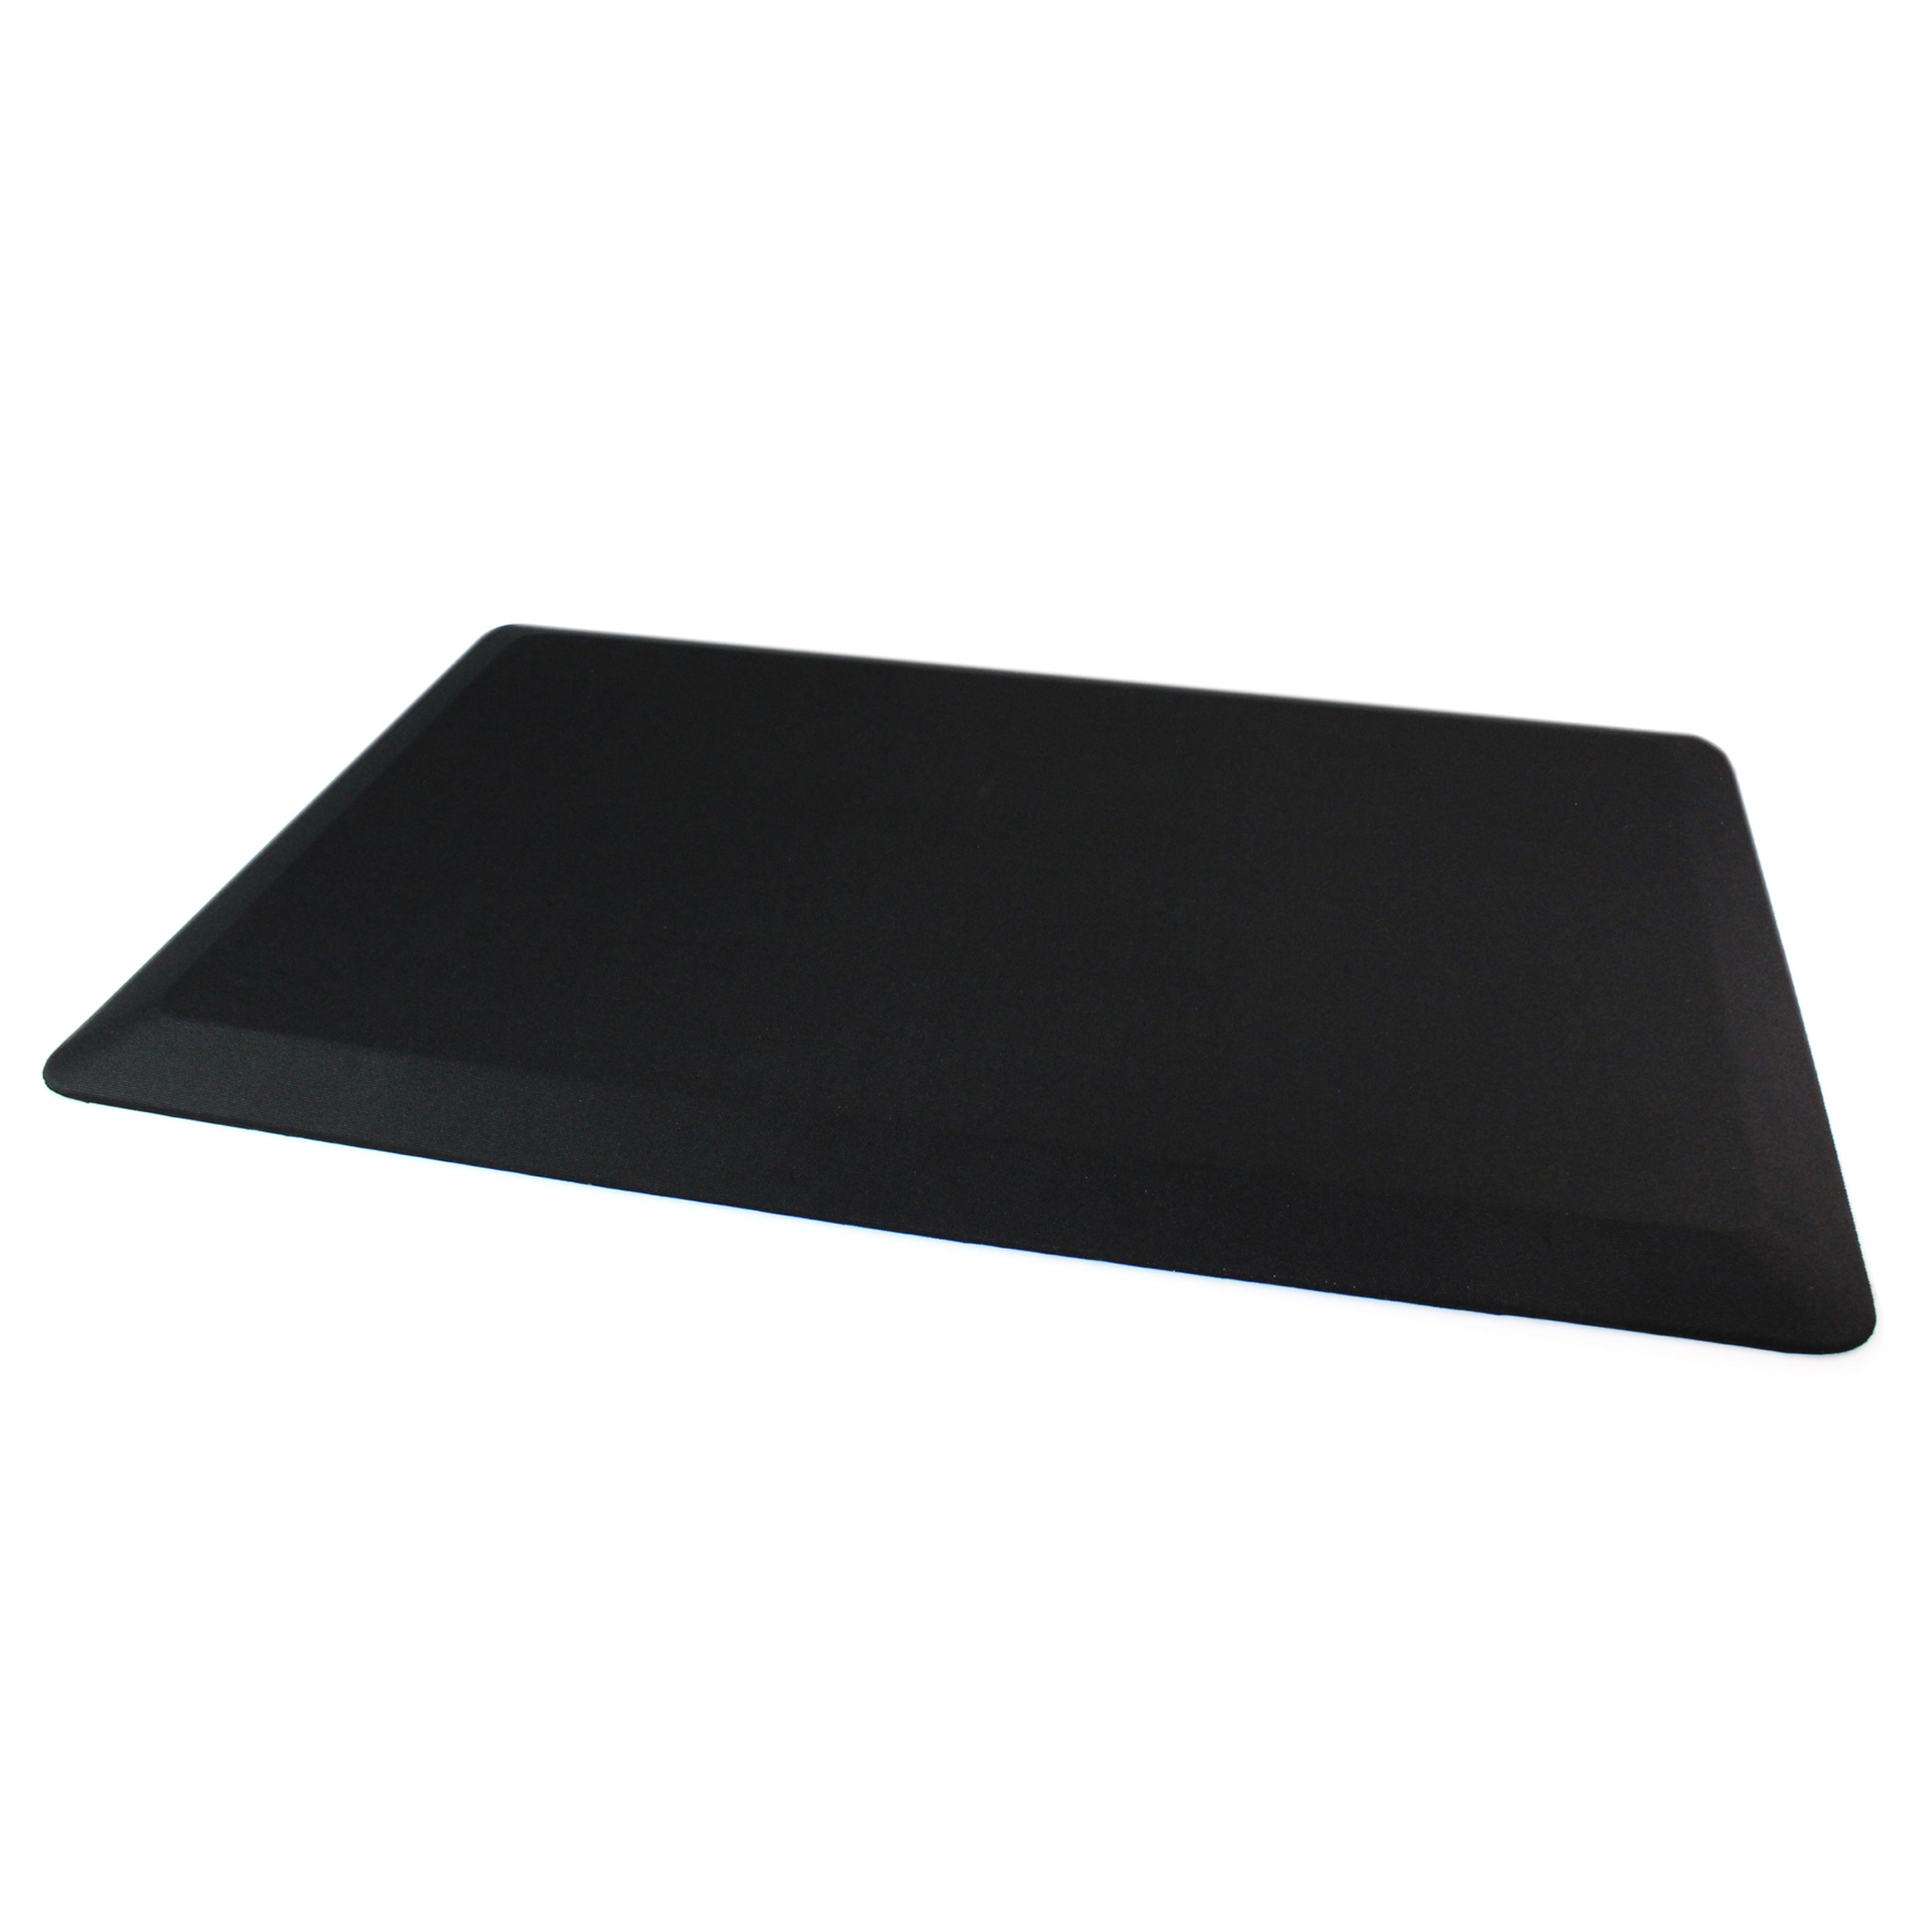 Floortex Standing Comfort Mat - 16 x 24 Black